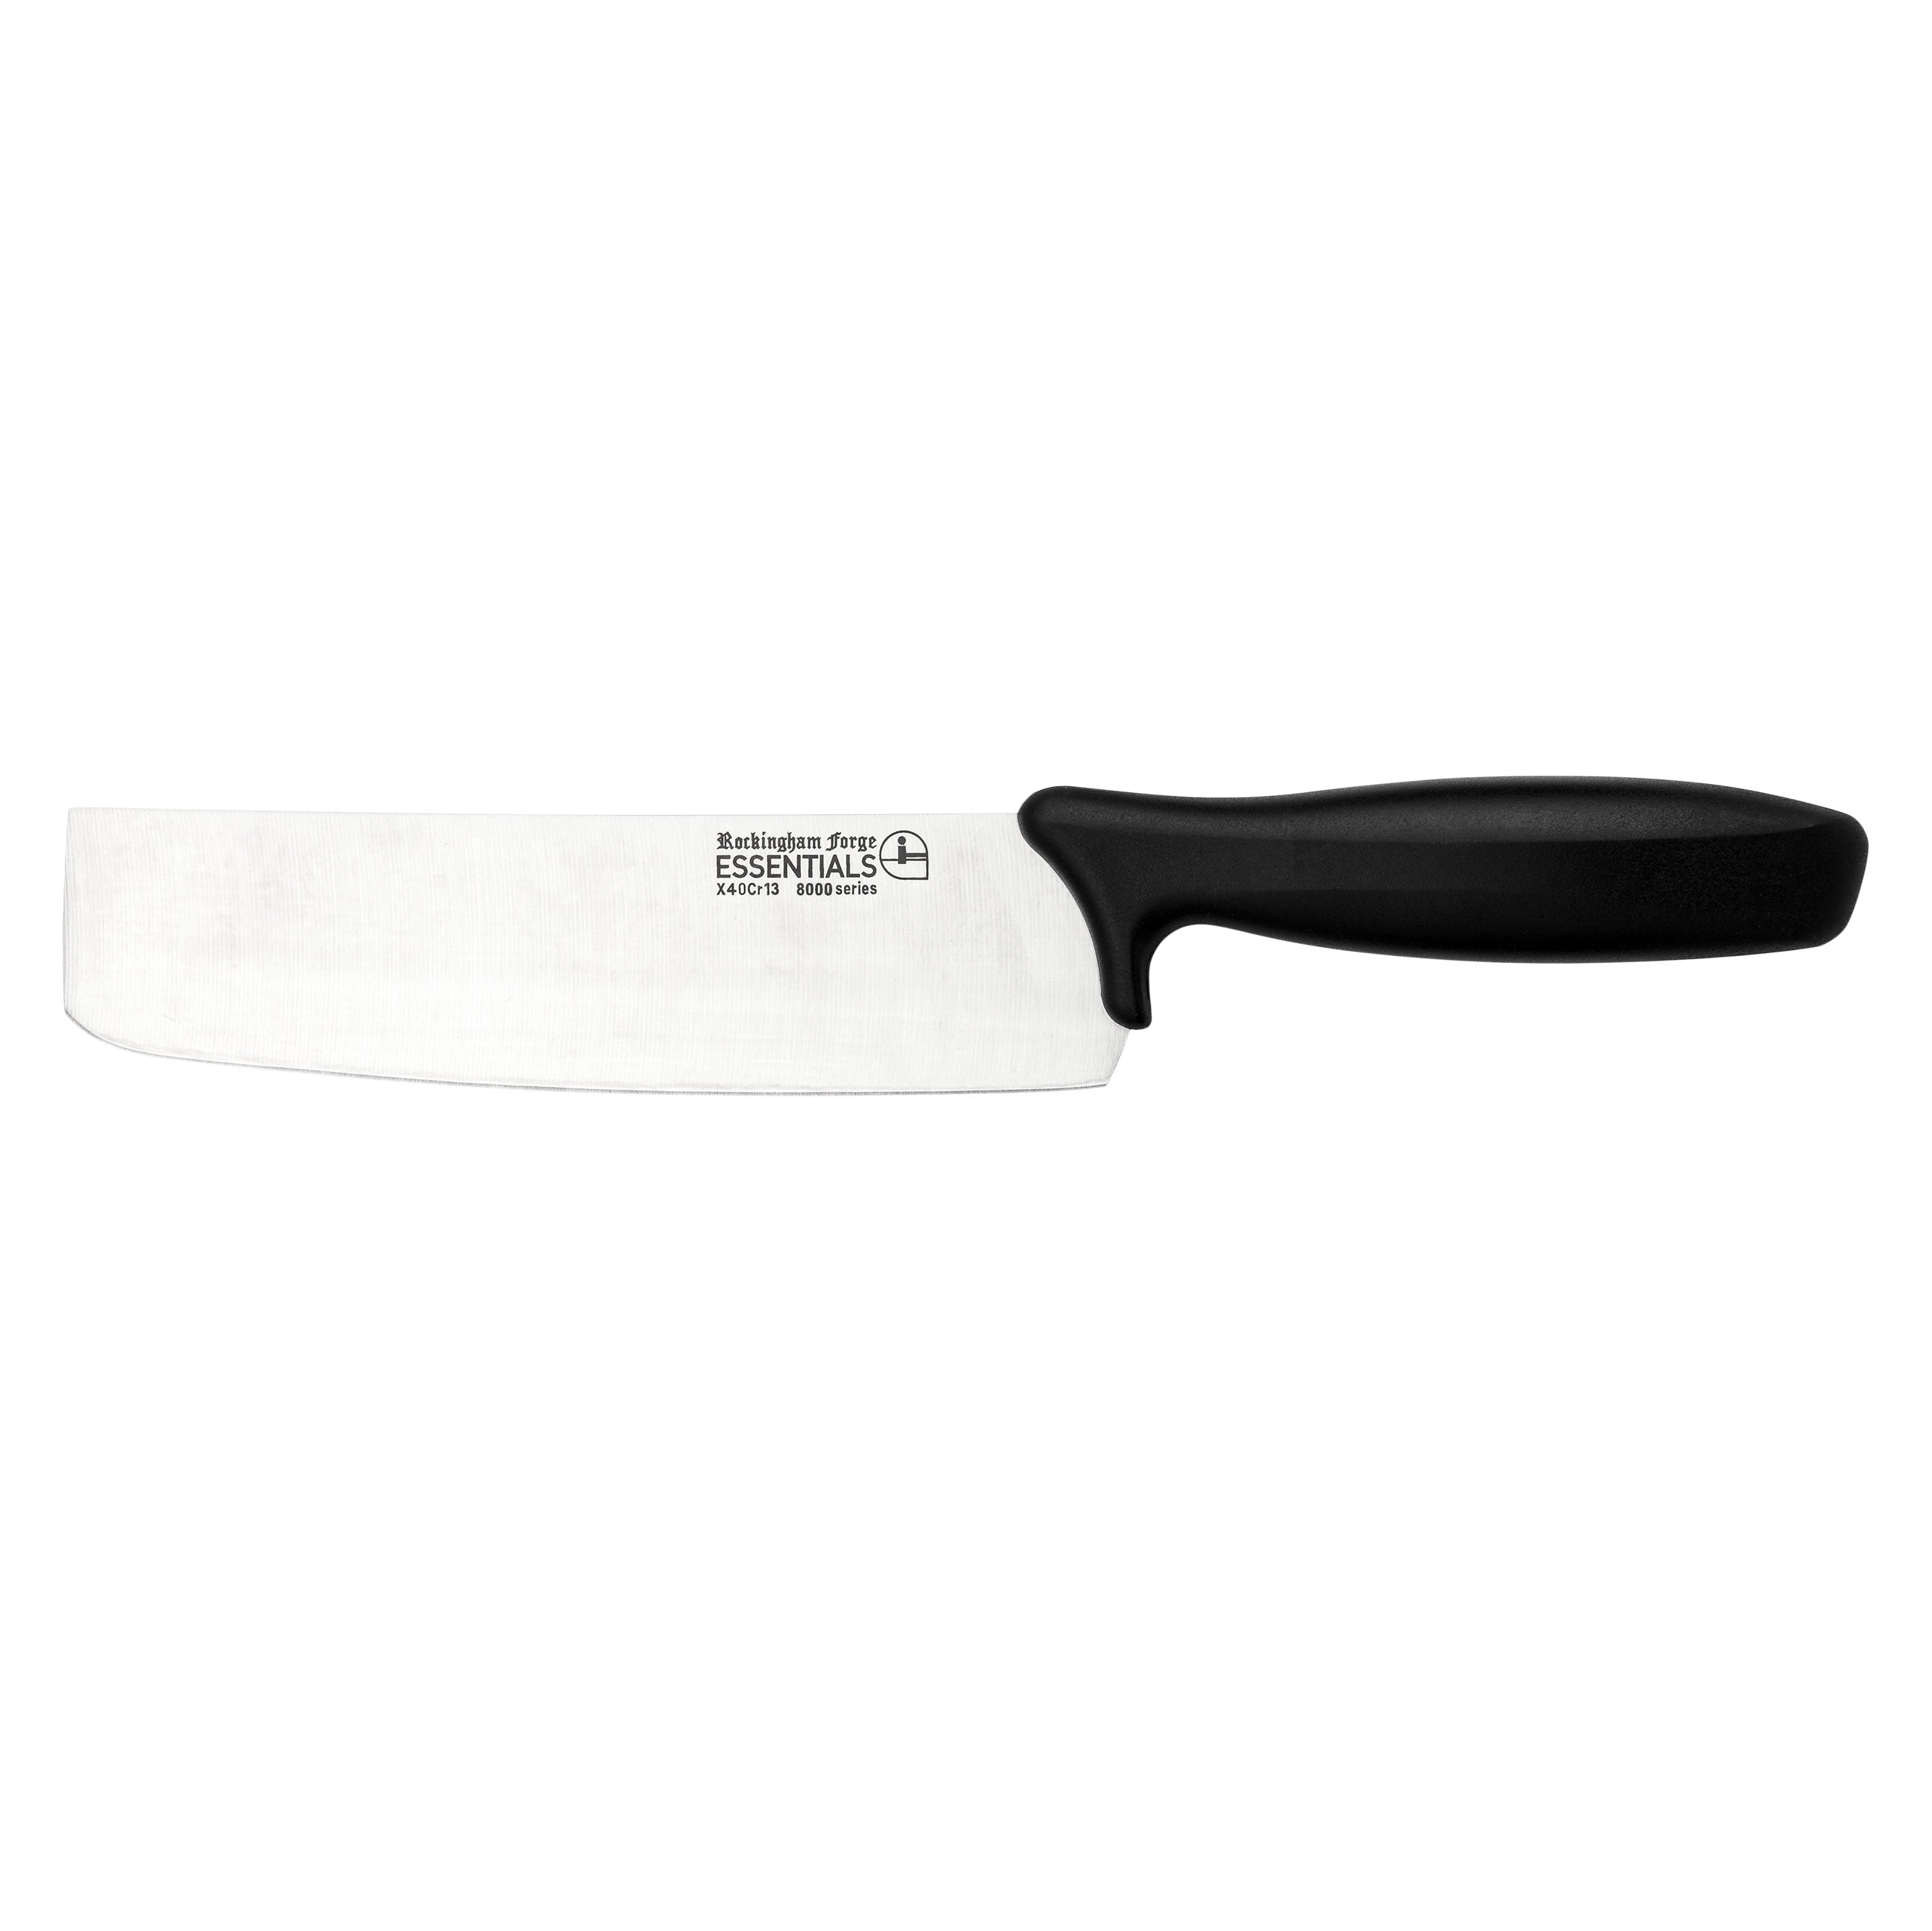 18cm Nakiri Knife